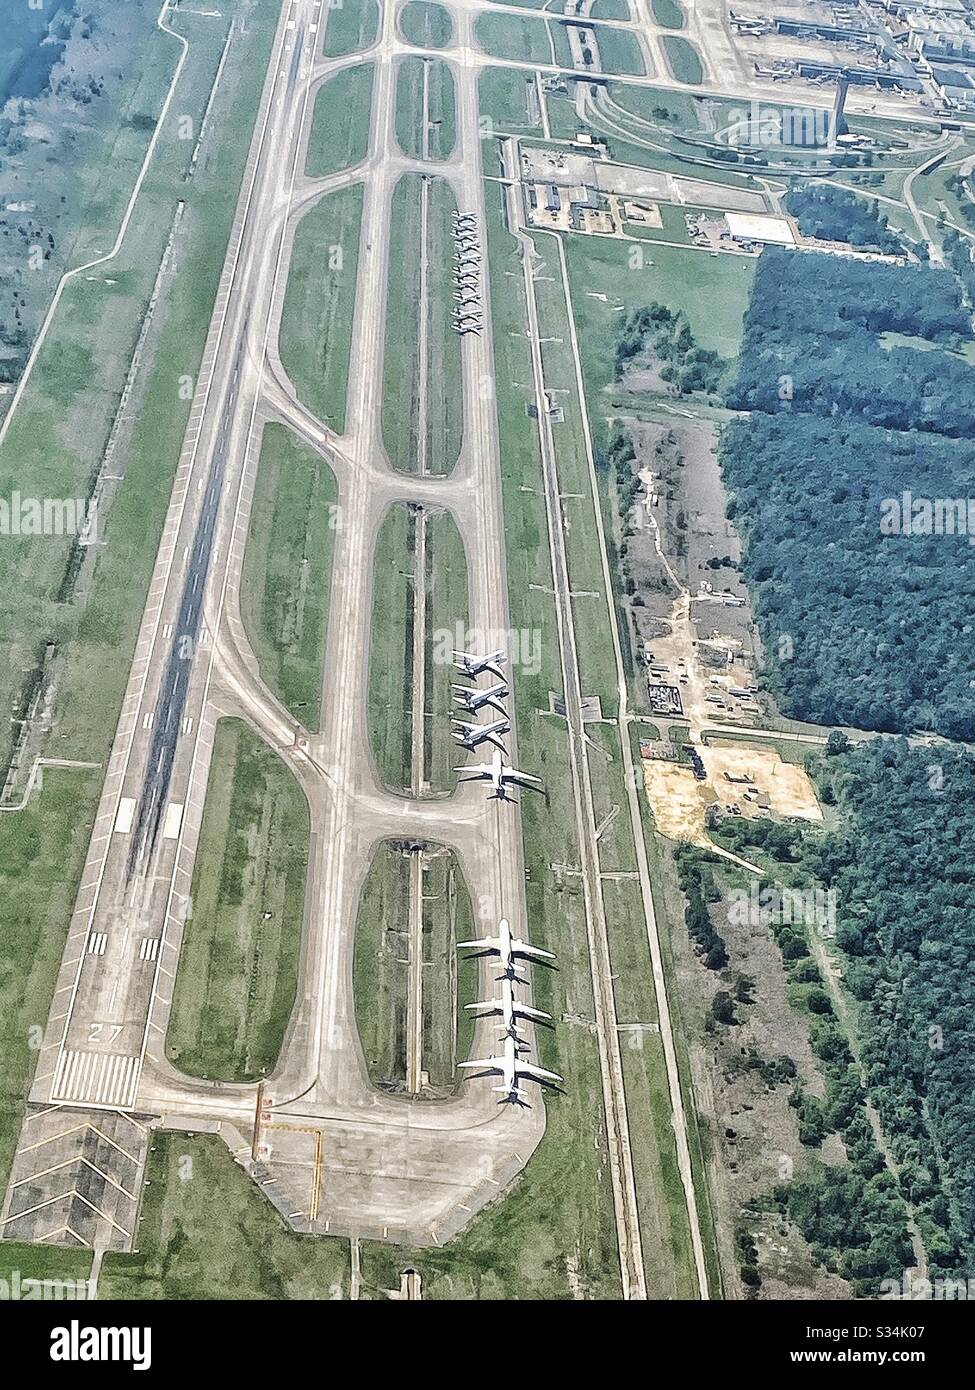 Vista aerea di aerei commerciali aerei collegati a terra a causa della pandemia di Coronavirus all'aeroporto intercontinentale George Bush, Houston, Texas Foto Stock